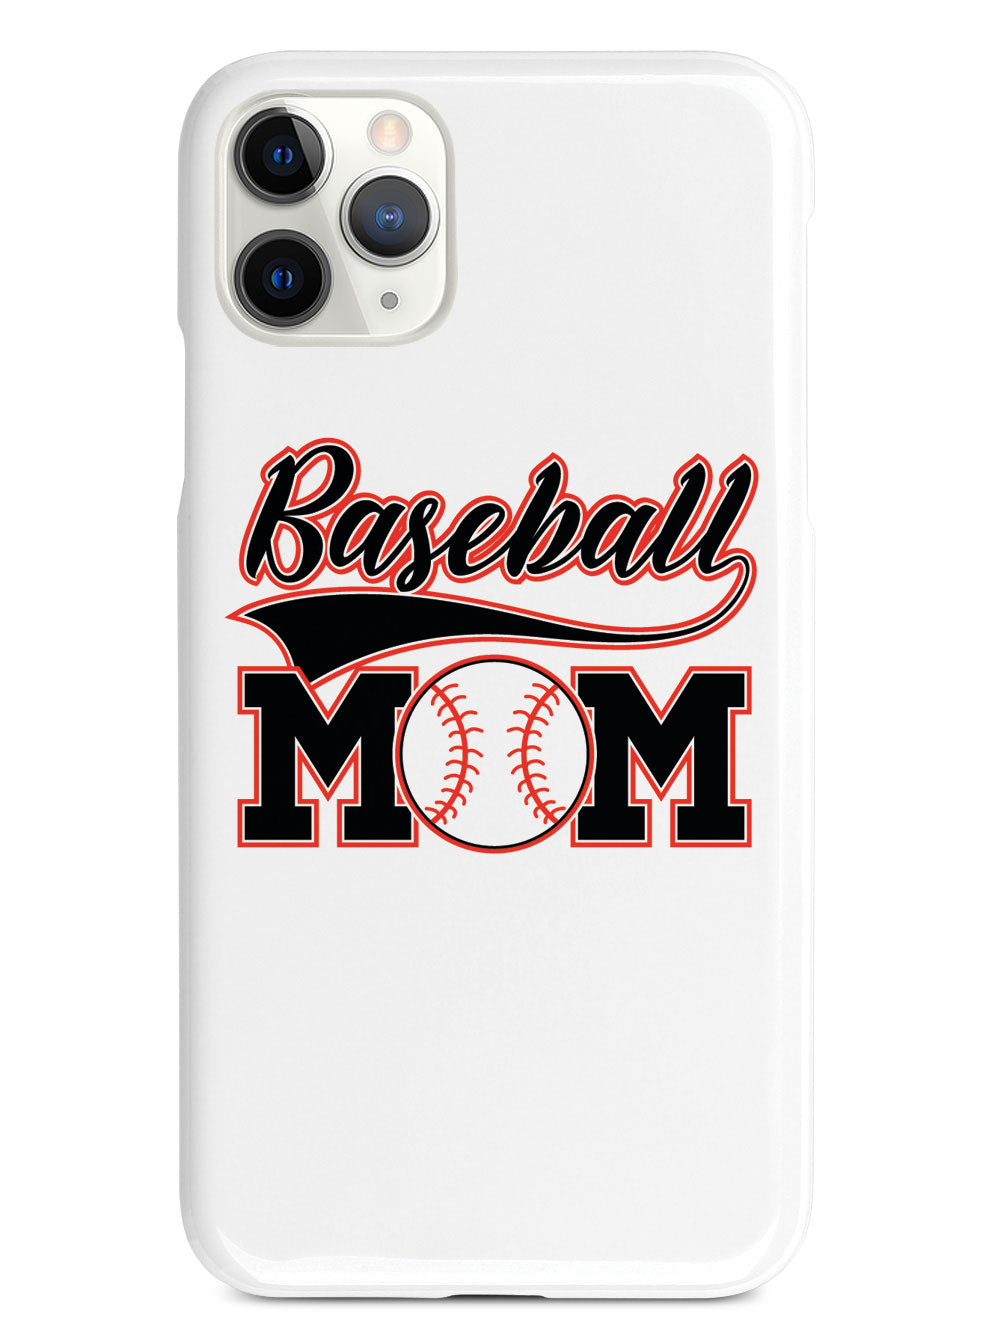 Baseball Mom - White Case